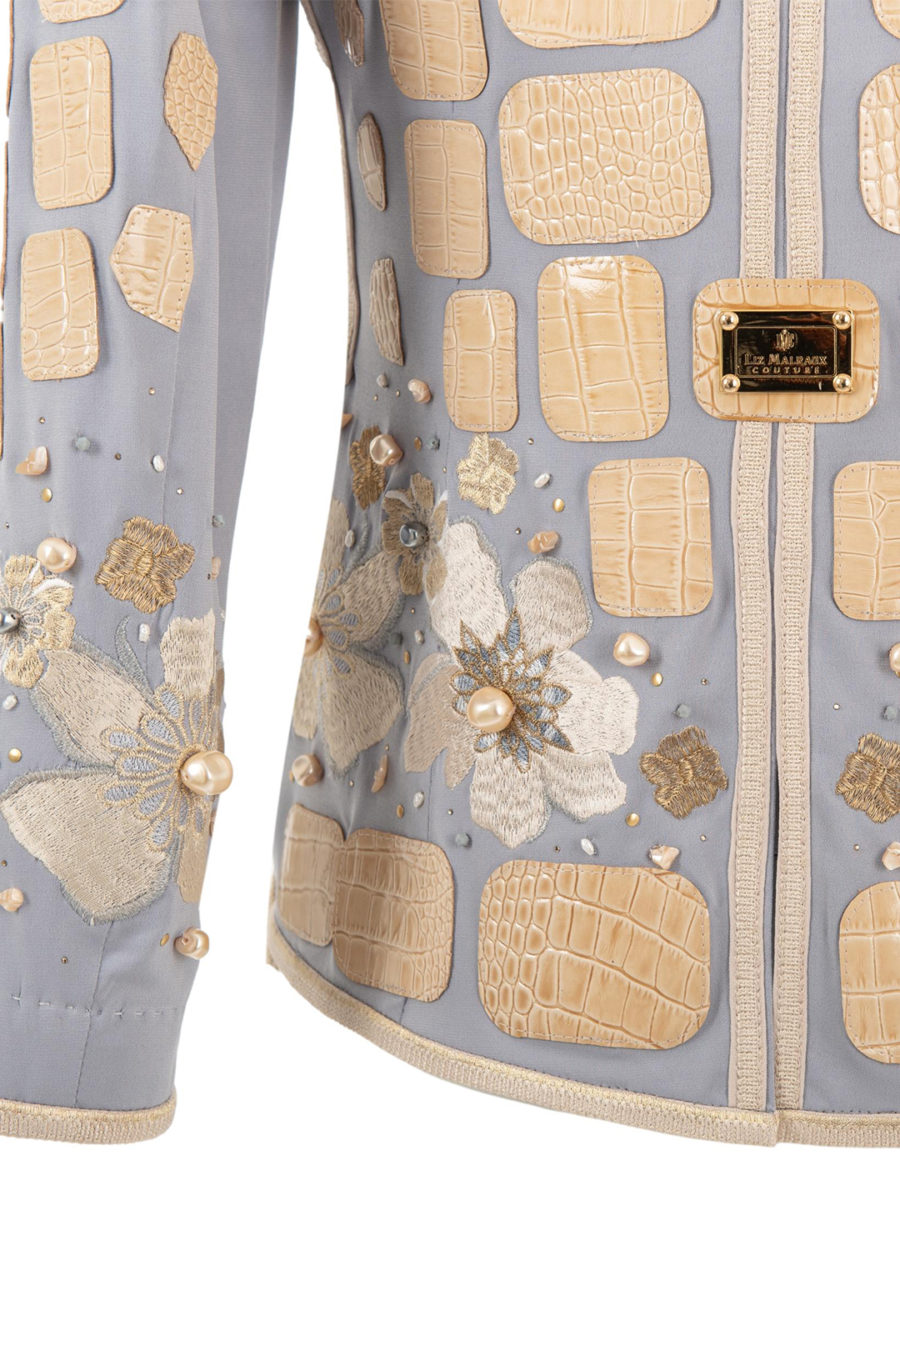 Haute Couture-Jacke mit "lace-embroidery" und Champagner-farbenen Lederpatches, von Hand mit 320 Kristallen und Perlen appliziert, Multisize